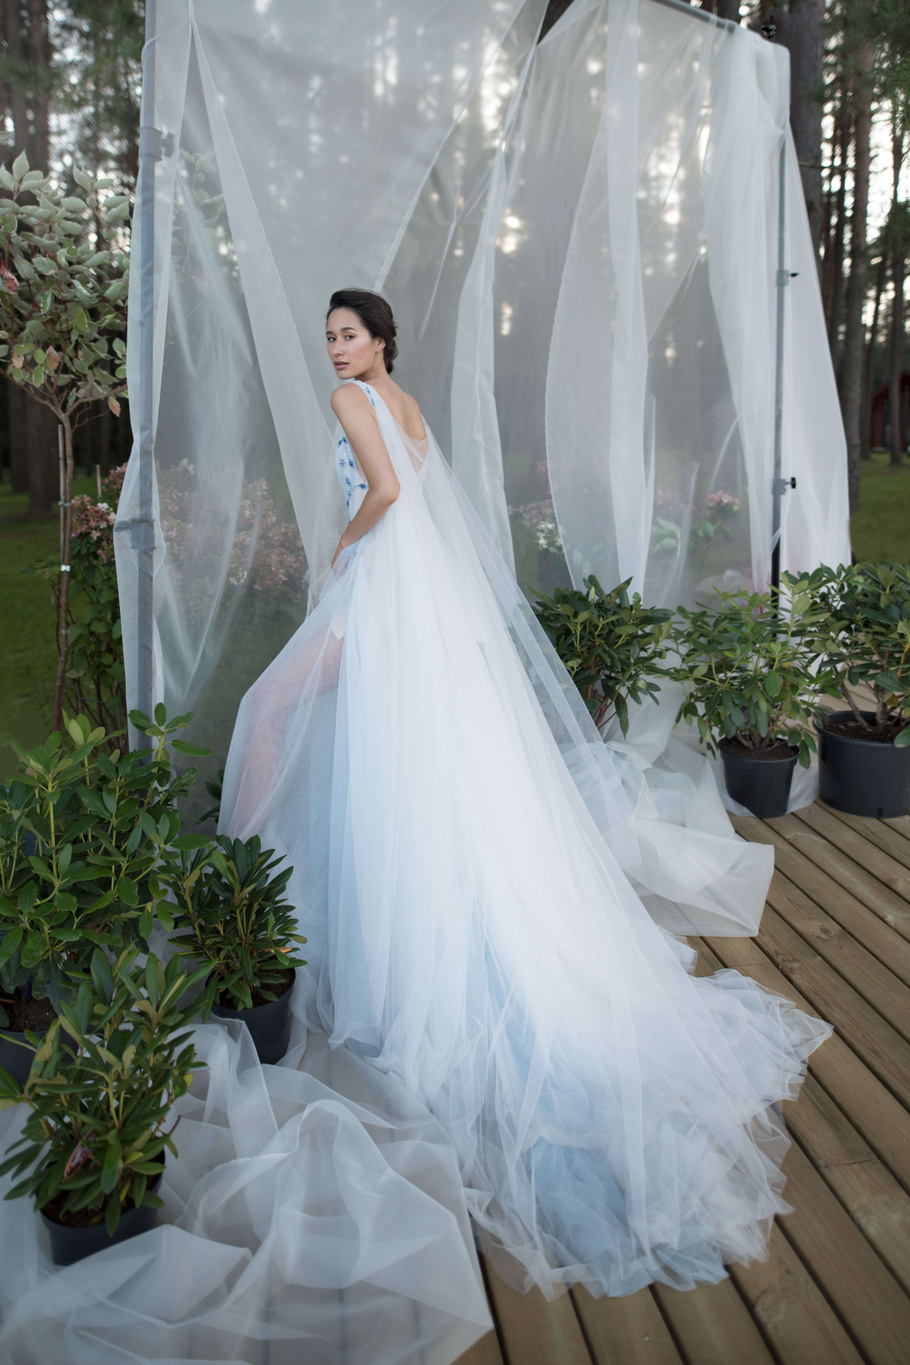 Купить свадебное платье «Винслоу» Бламмо Биамо из коллекции Нимфа 2020 года в Москве